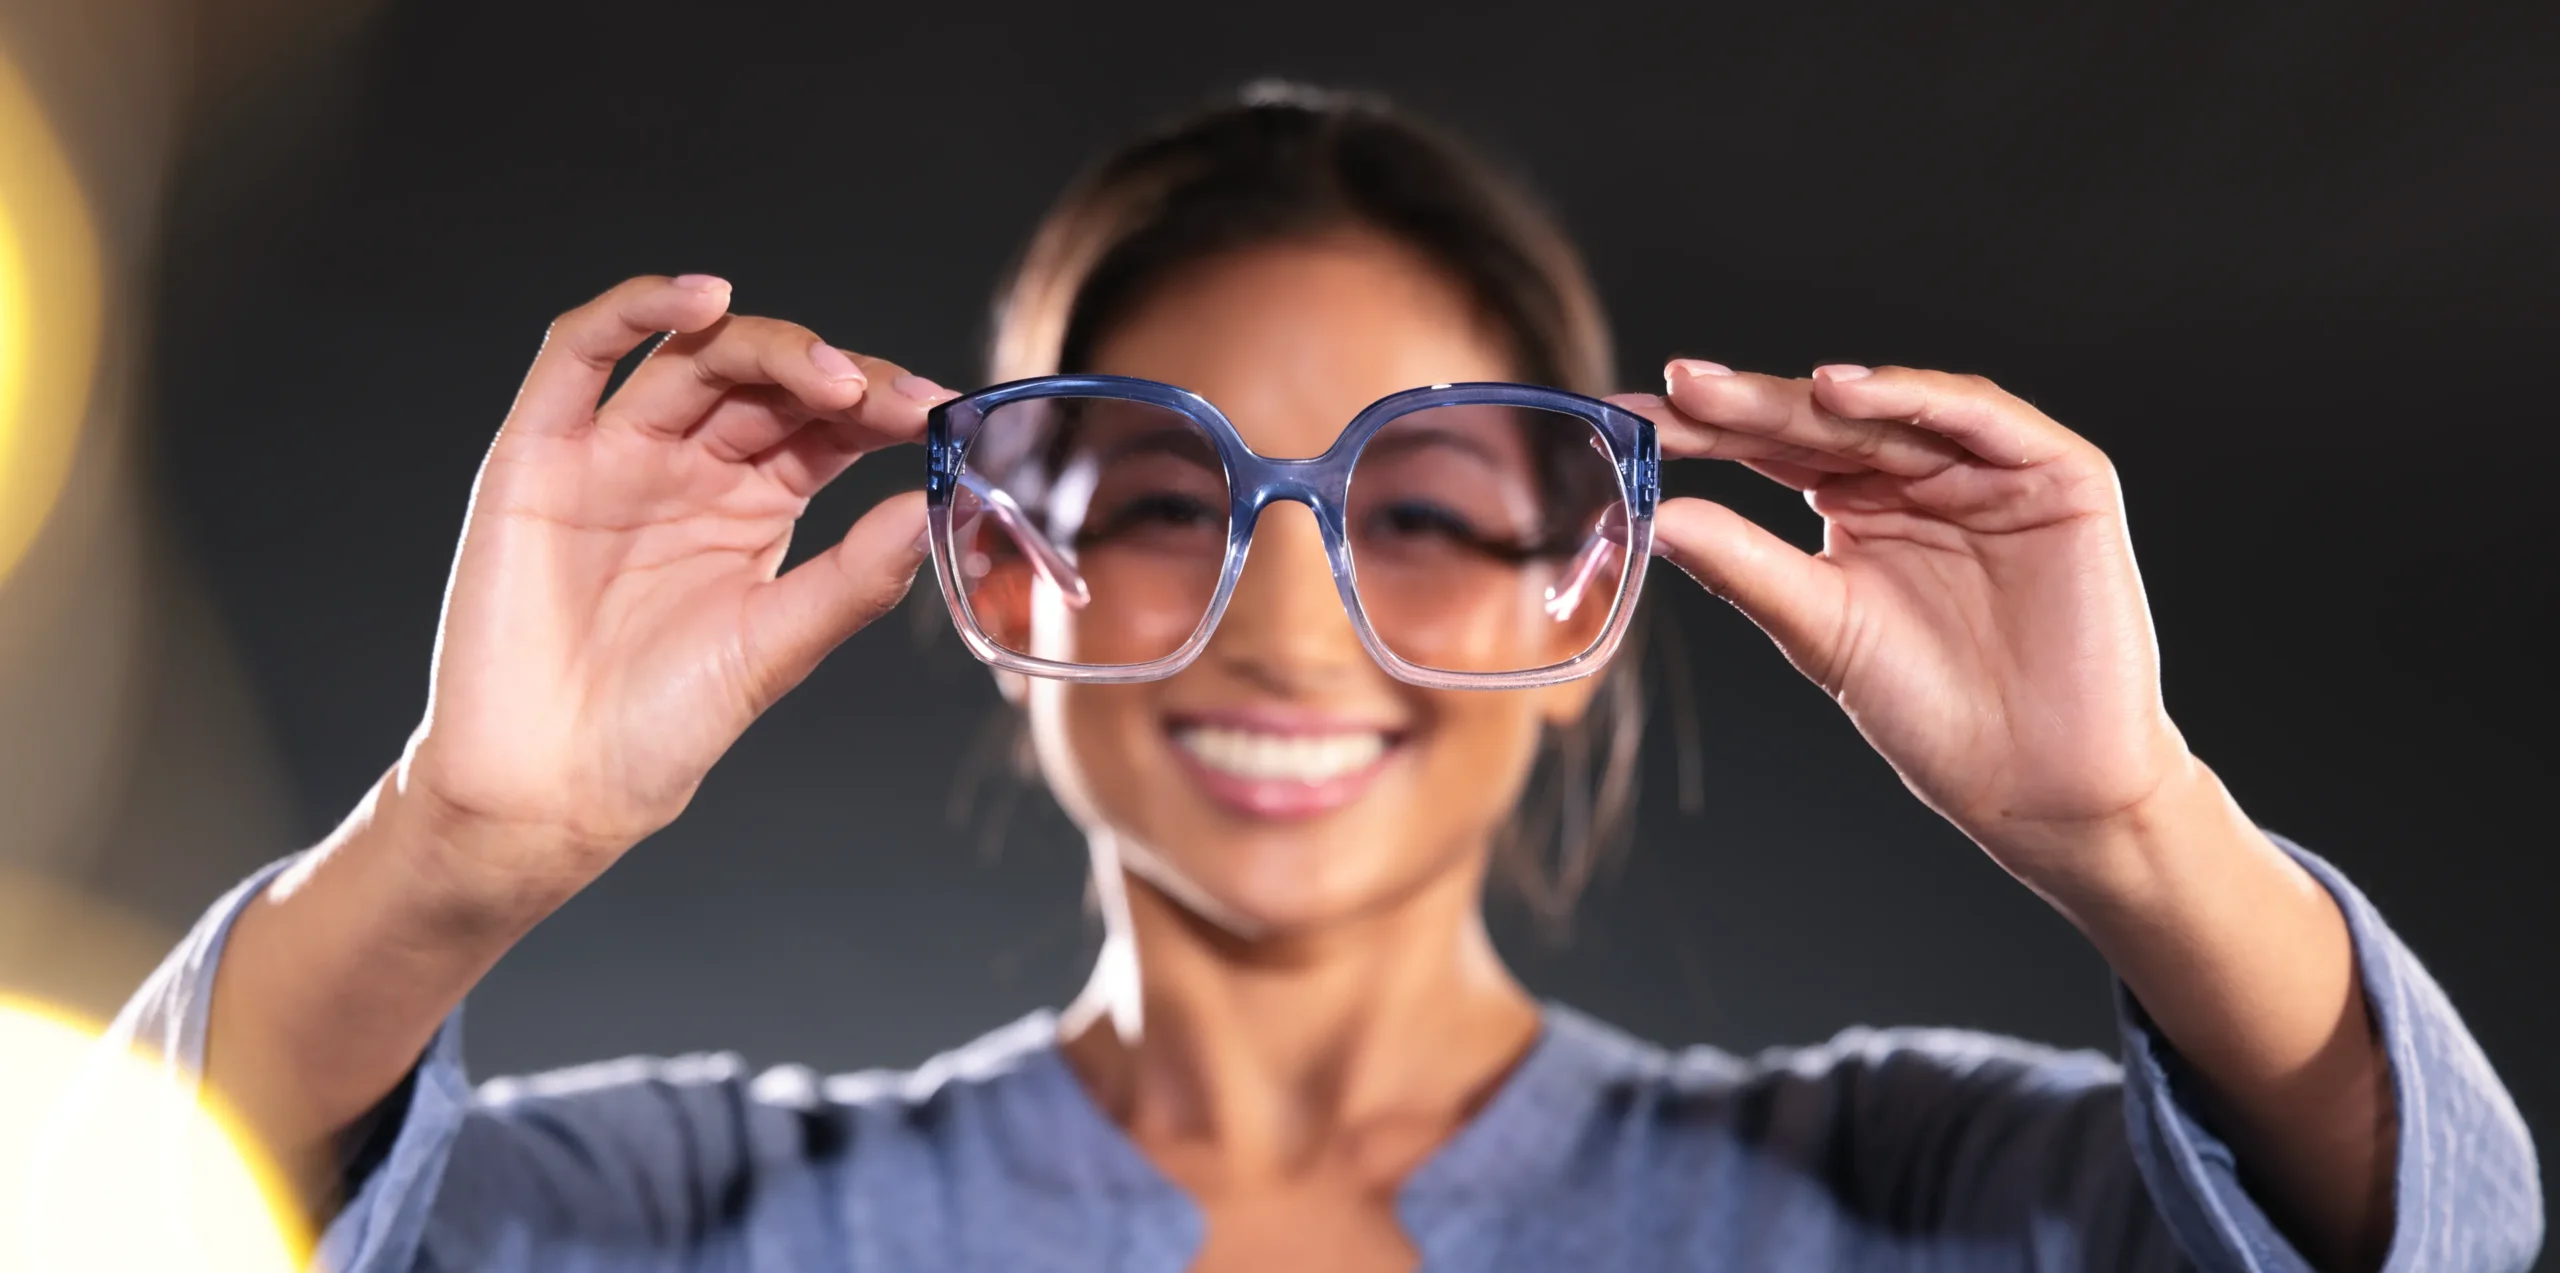 Headerbild zu Produktfotografie Frau zeigt Brille